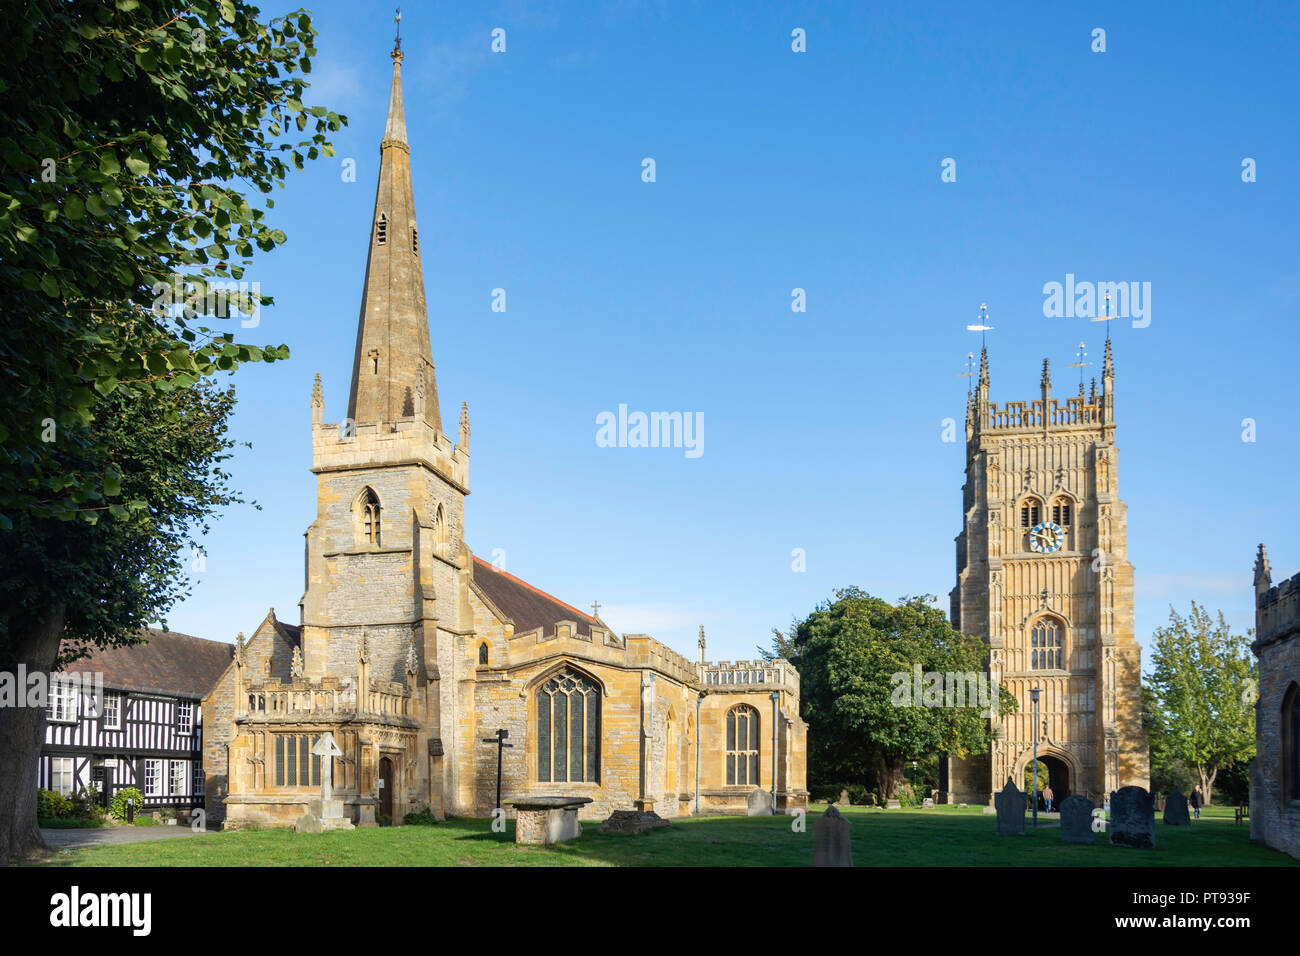 Tous les Saints de l'église paroissiale et clocher, Evesham Abbey, Evesham, Worcestershire, Angleterre, Royaume-Uni Banque D'Images